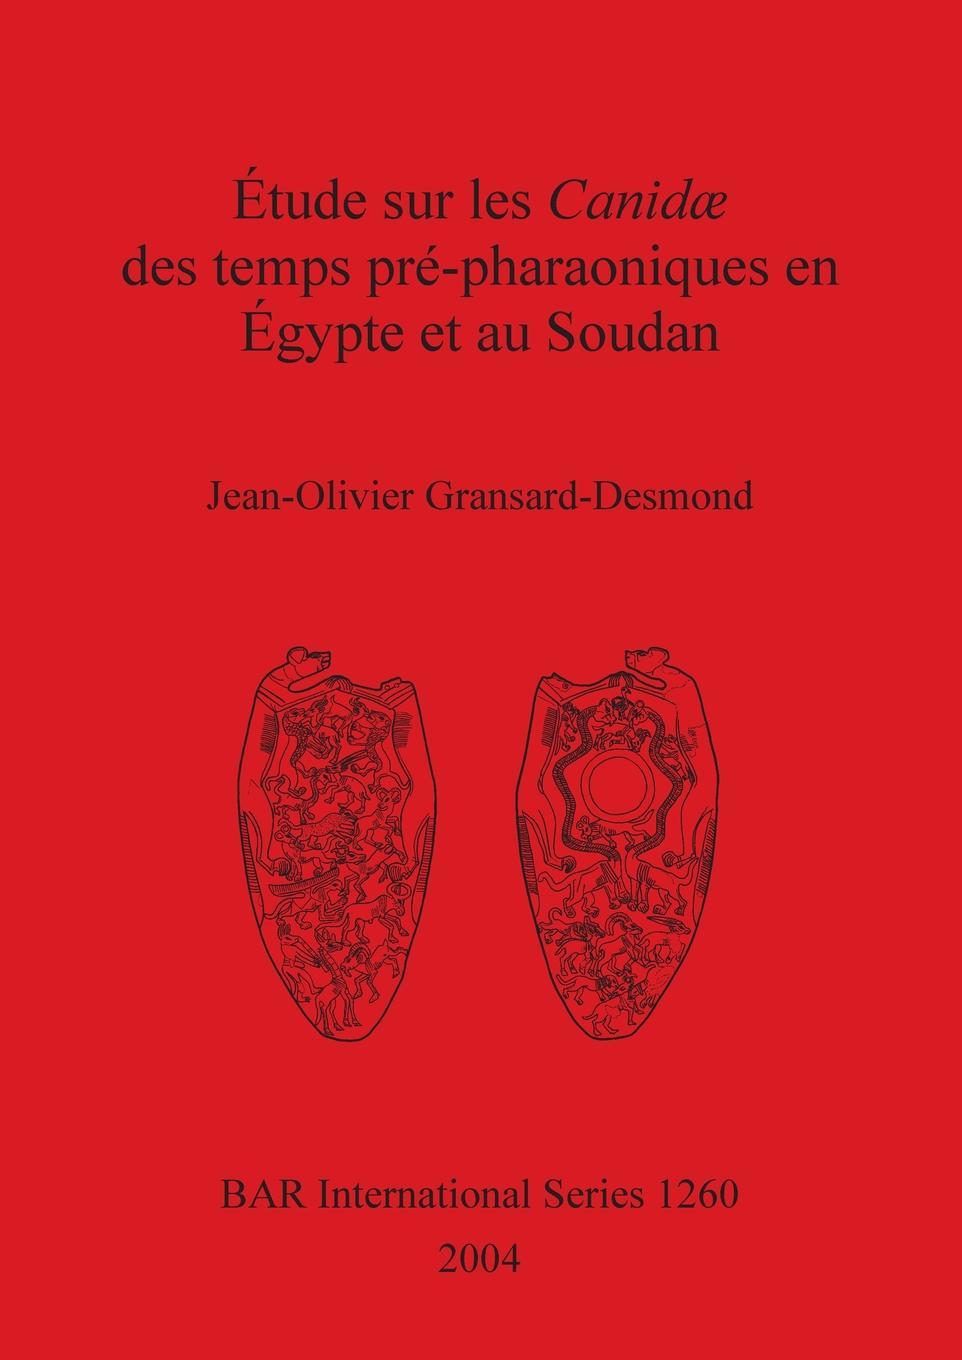 Carte Etude sur les Canidae des temps prepharaoniques en Egypte et au Soudan Jean-Olivier Gransard-Desmond